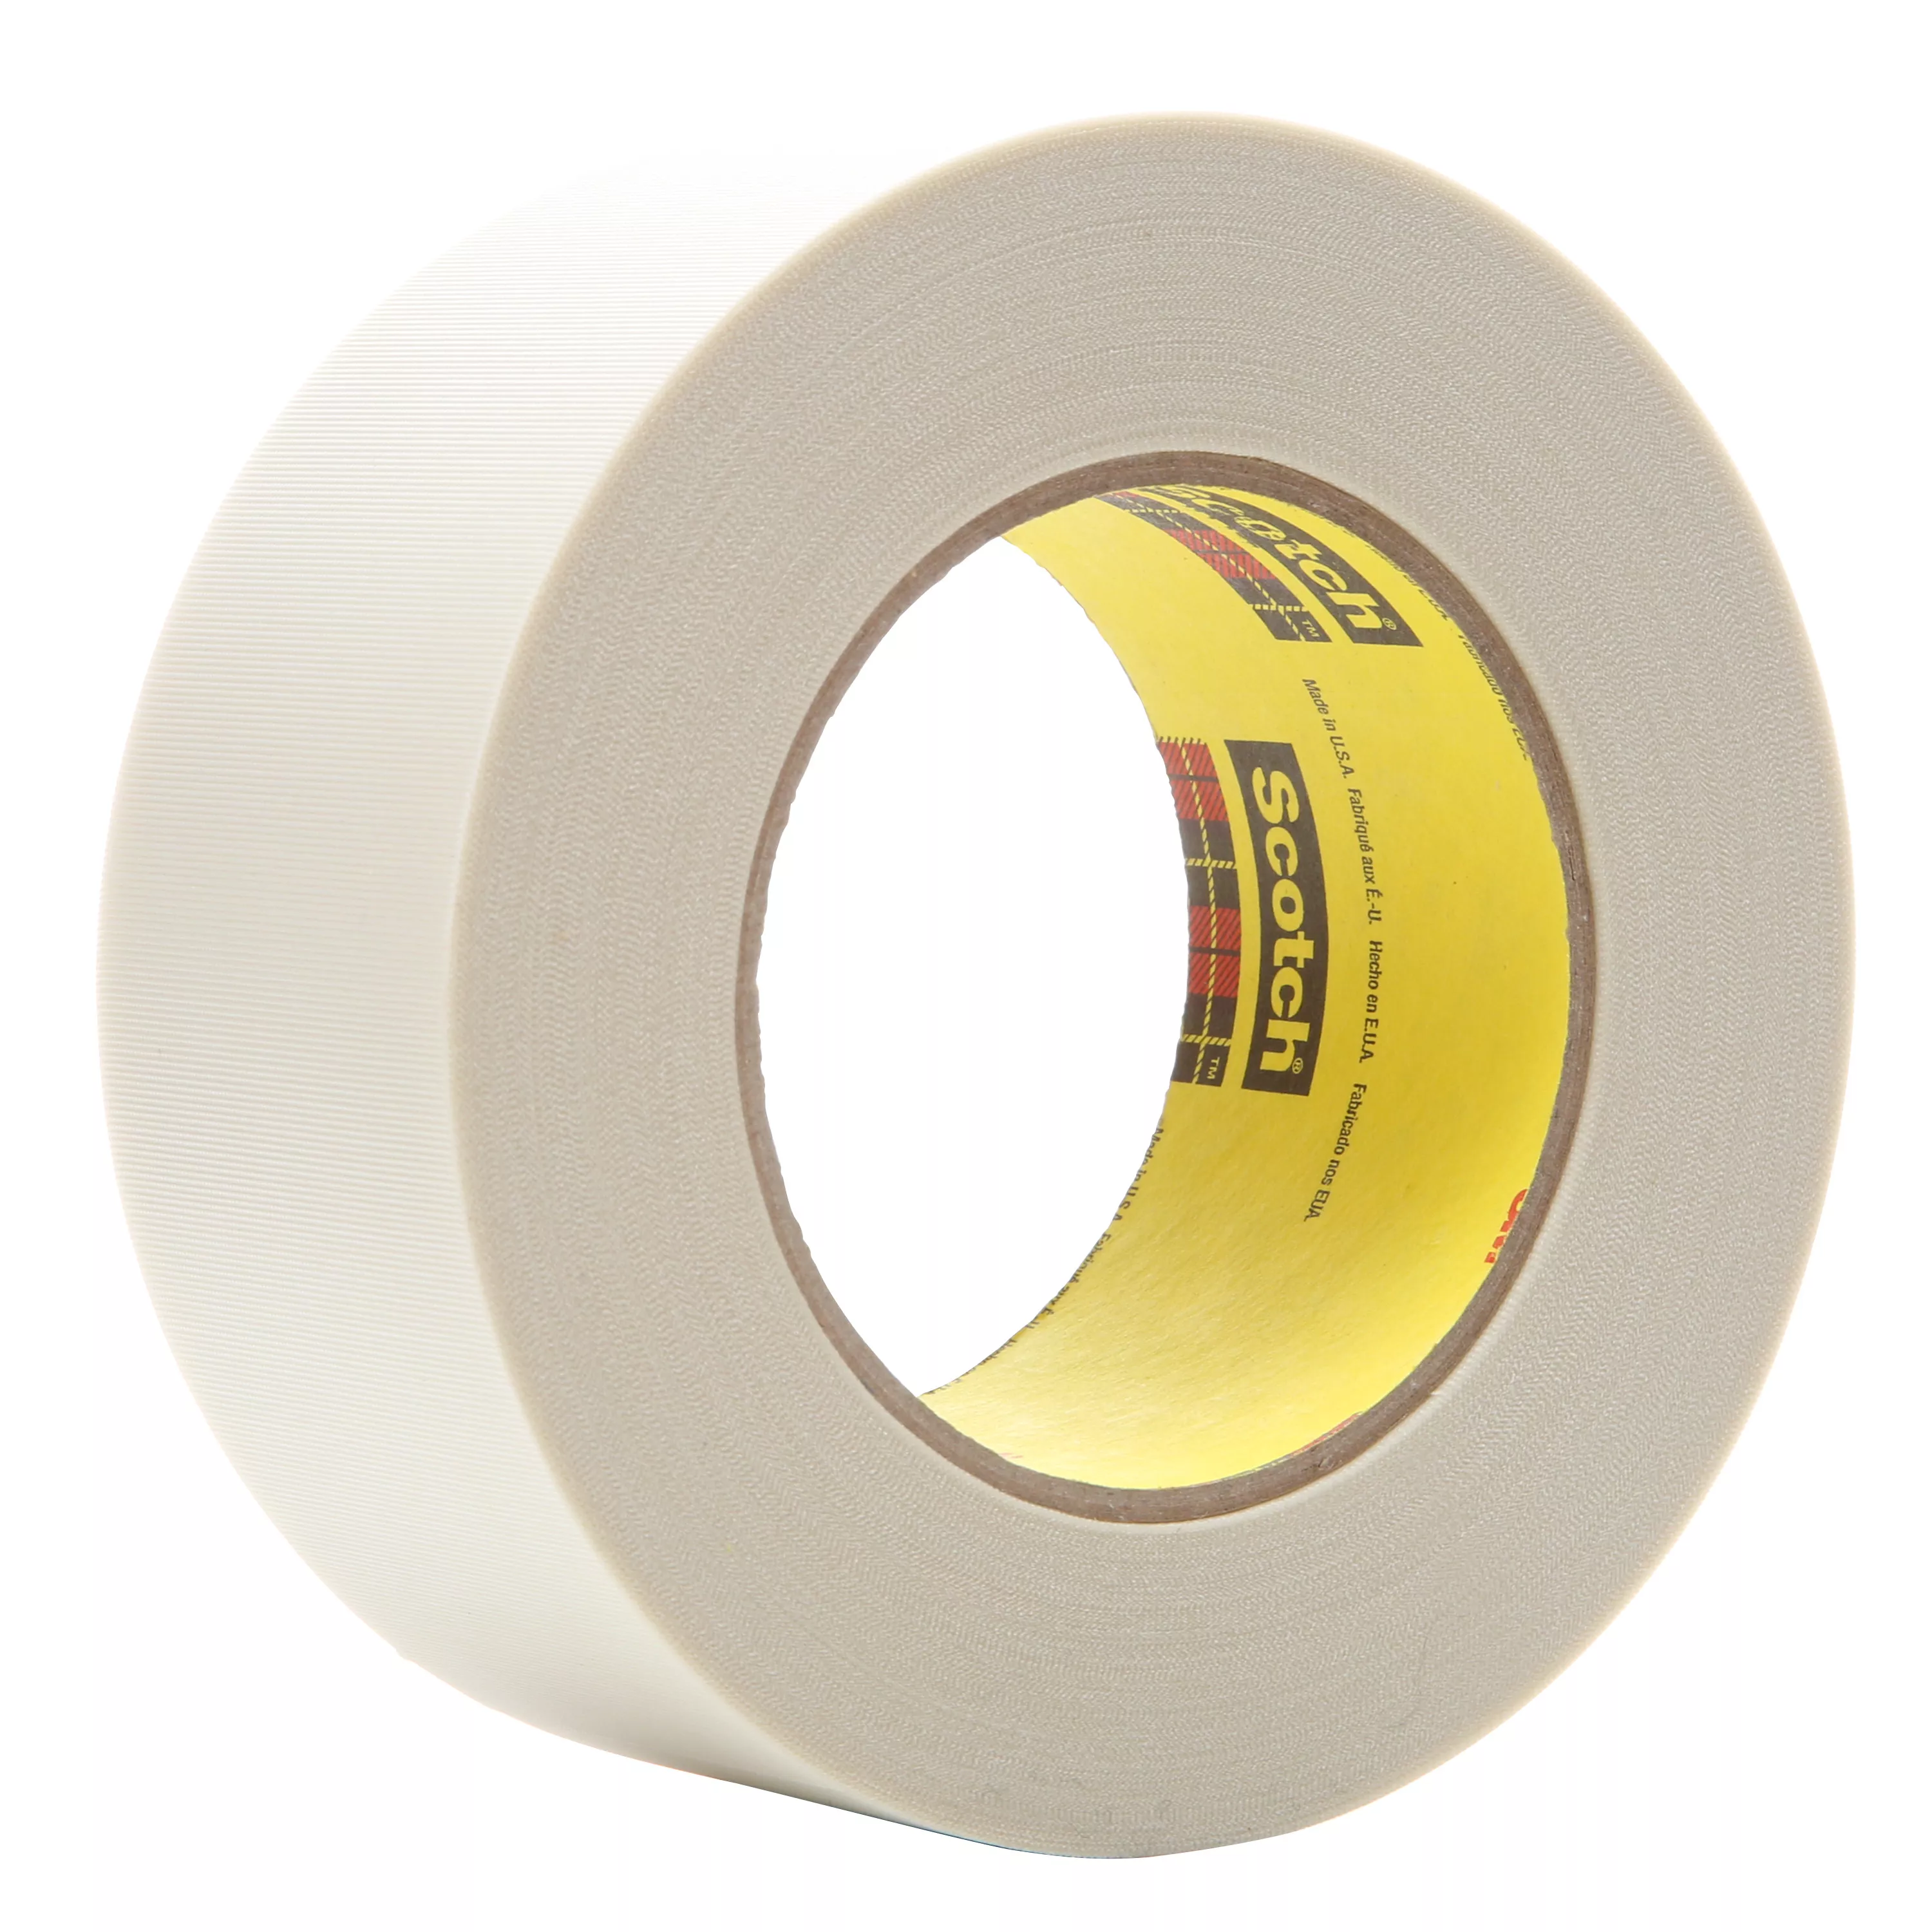 3M™ Glass Cloth Tape 361, White, 2 in x 60 yd, 6.4 mil, 24 rolls per
case